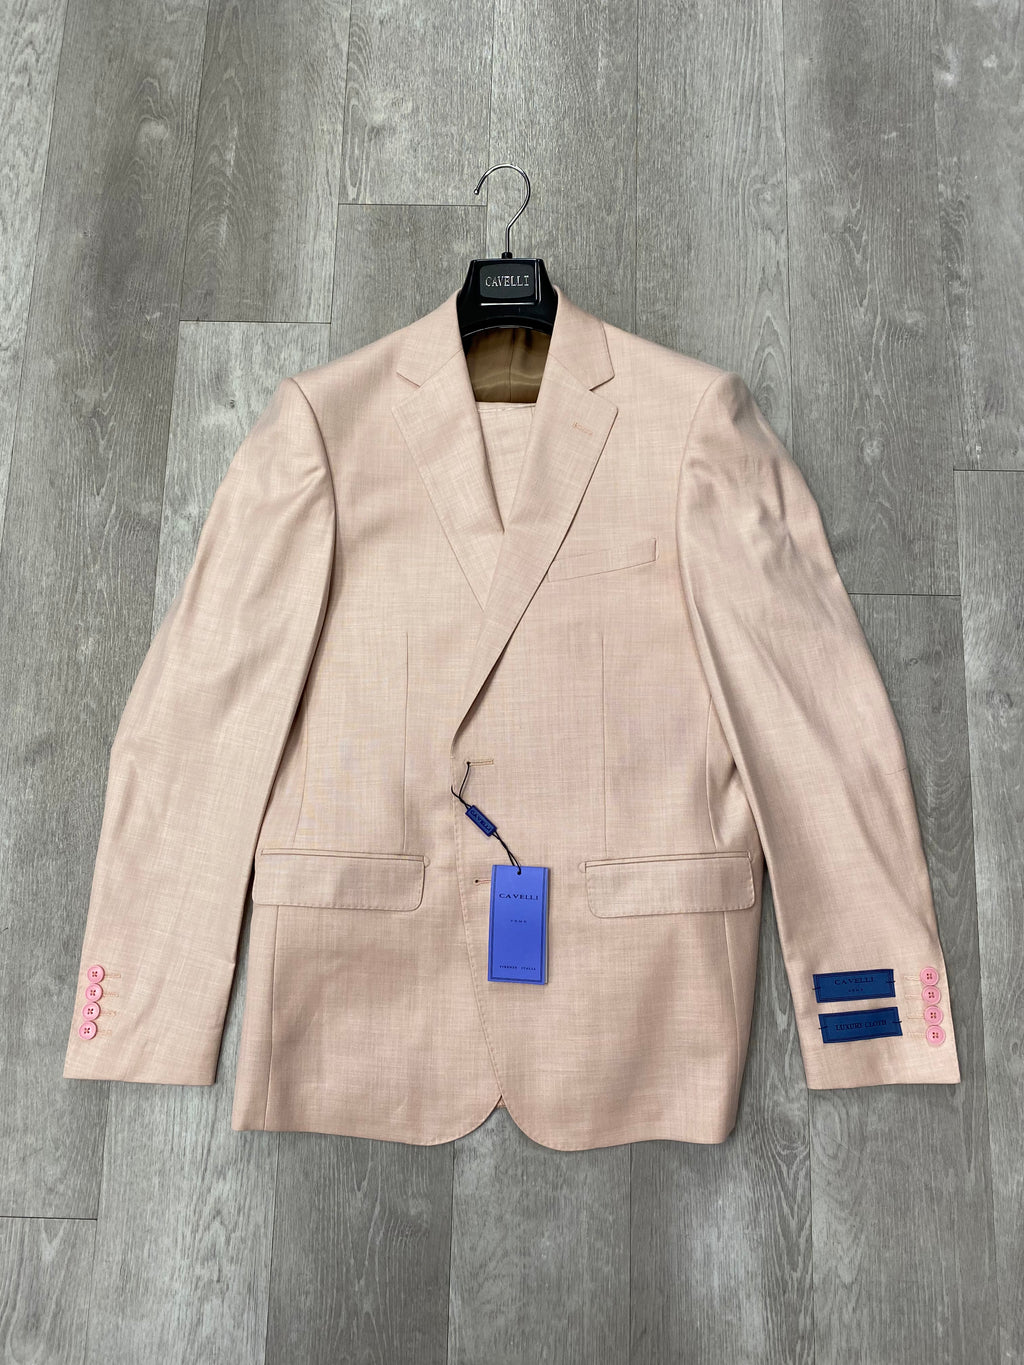 Cavelli Uomo Porto Slim Fit Suit 1986/16 Dark Blush